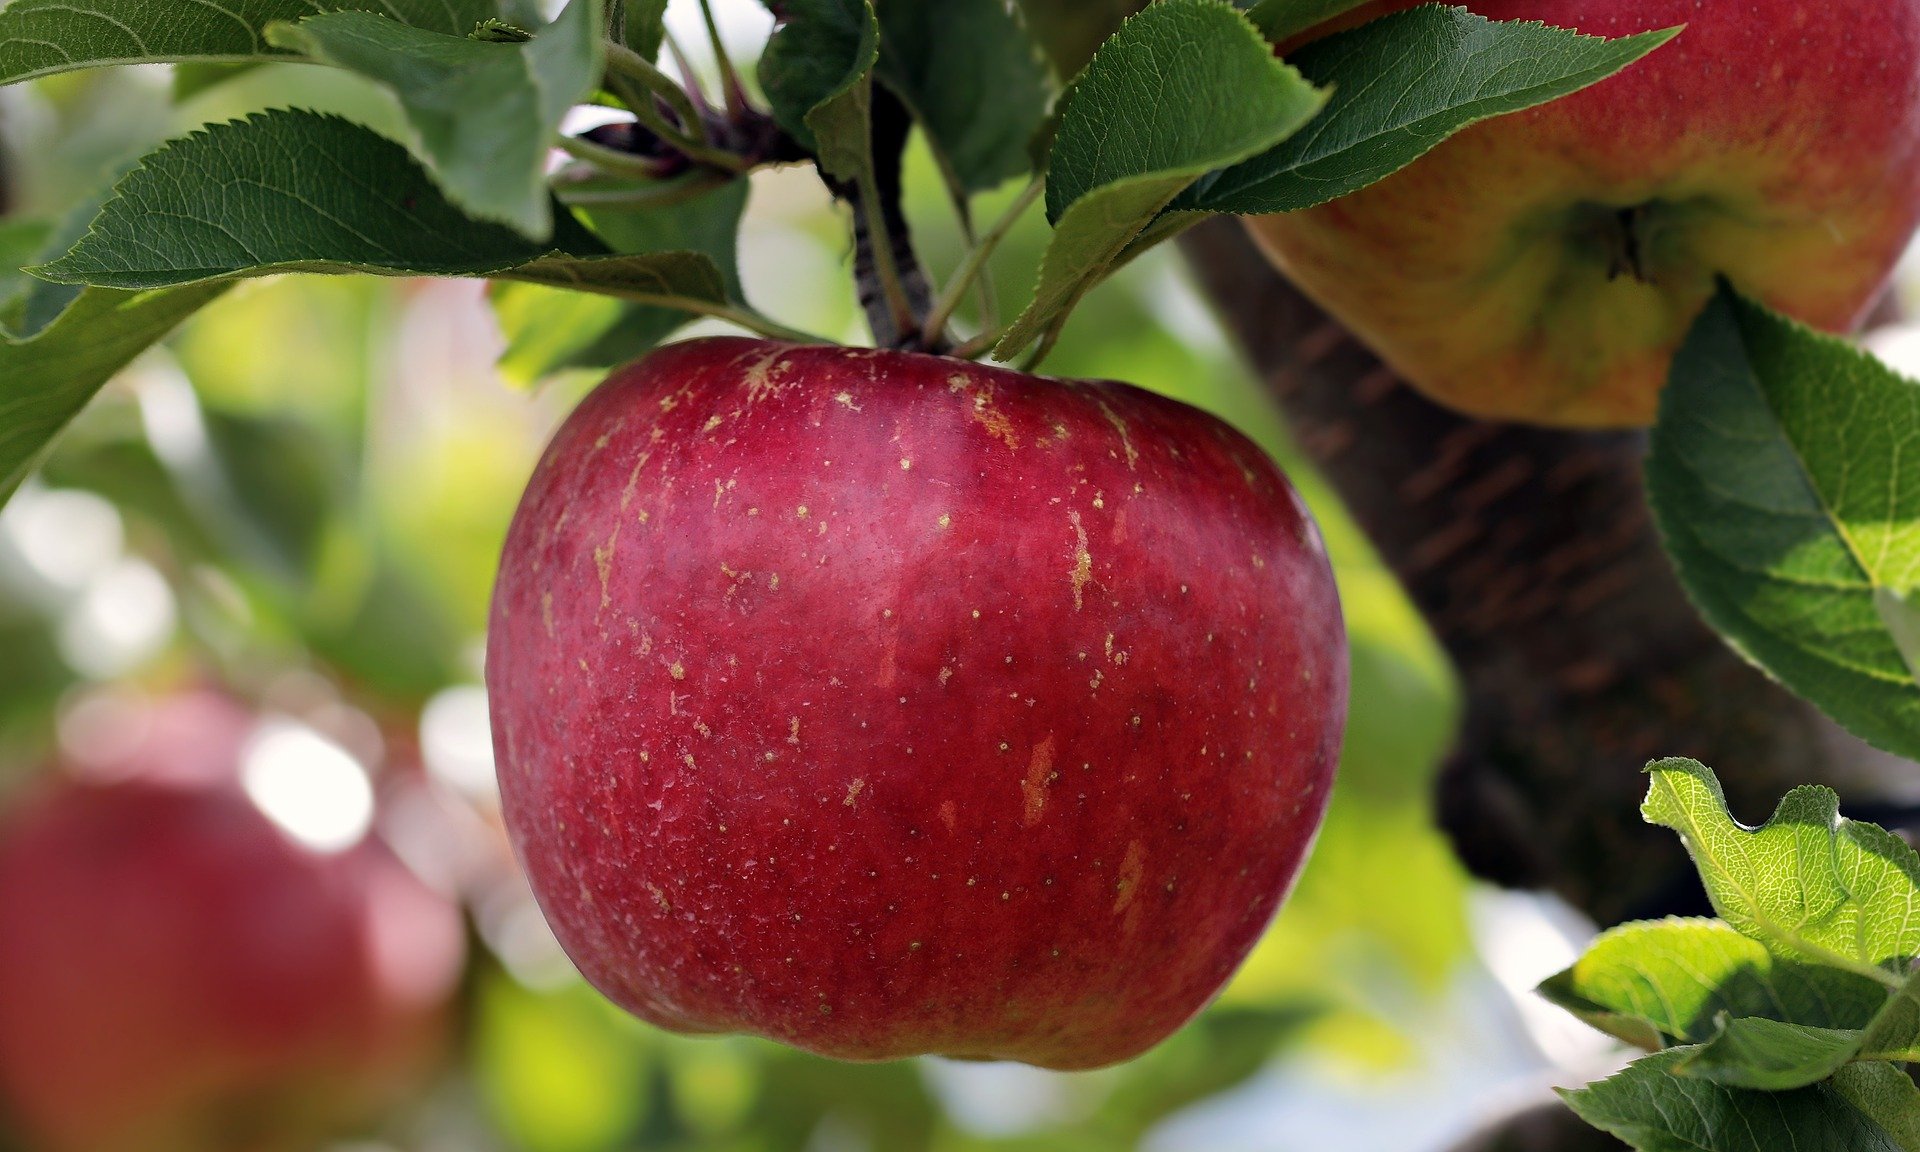 les fruits owoce quiz z francuskiego nauka języka zabawa dla maluszków przedszkole test wiedzy dzieci dwujęzyczne słówka słownictwo jabłko pomme